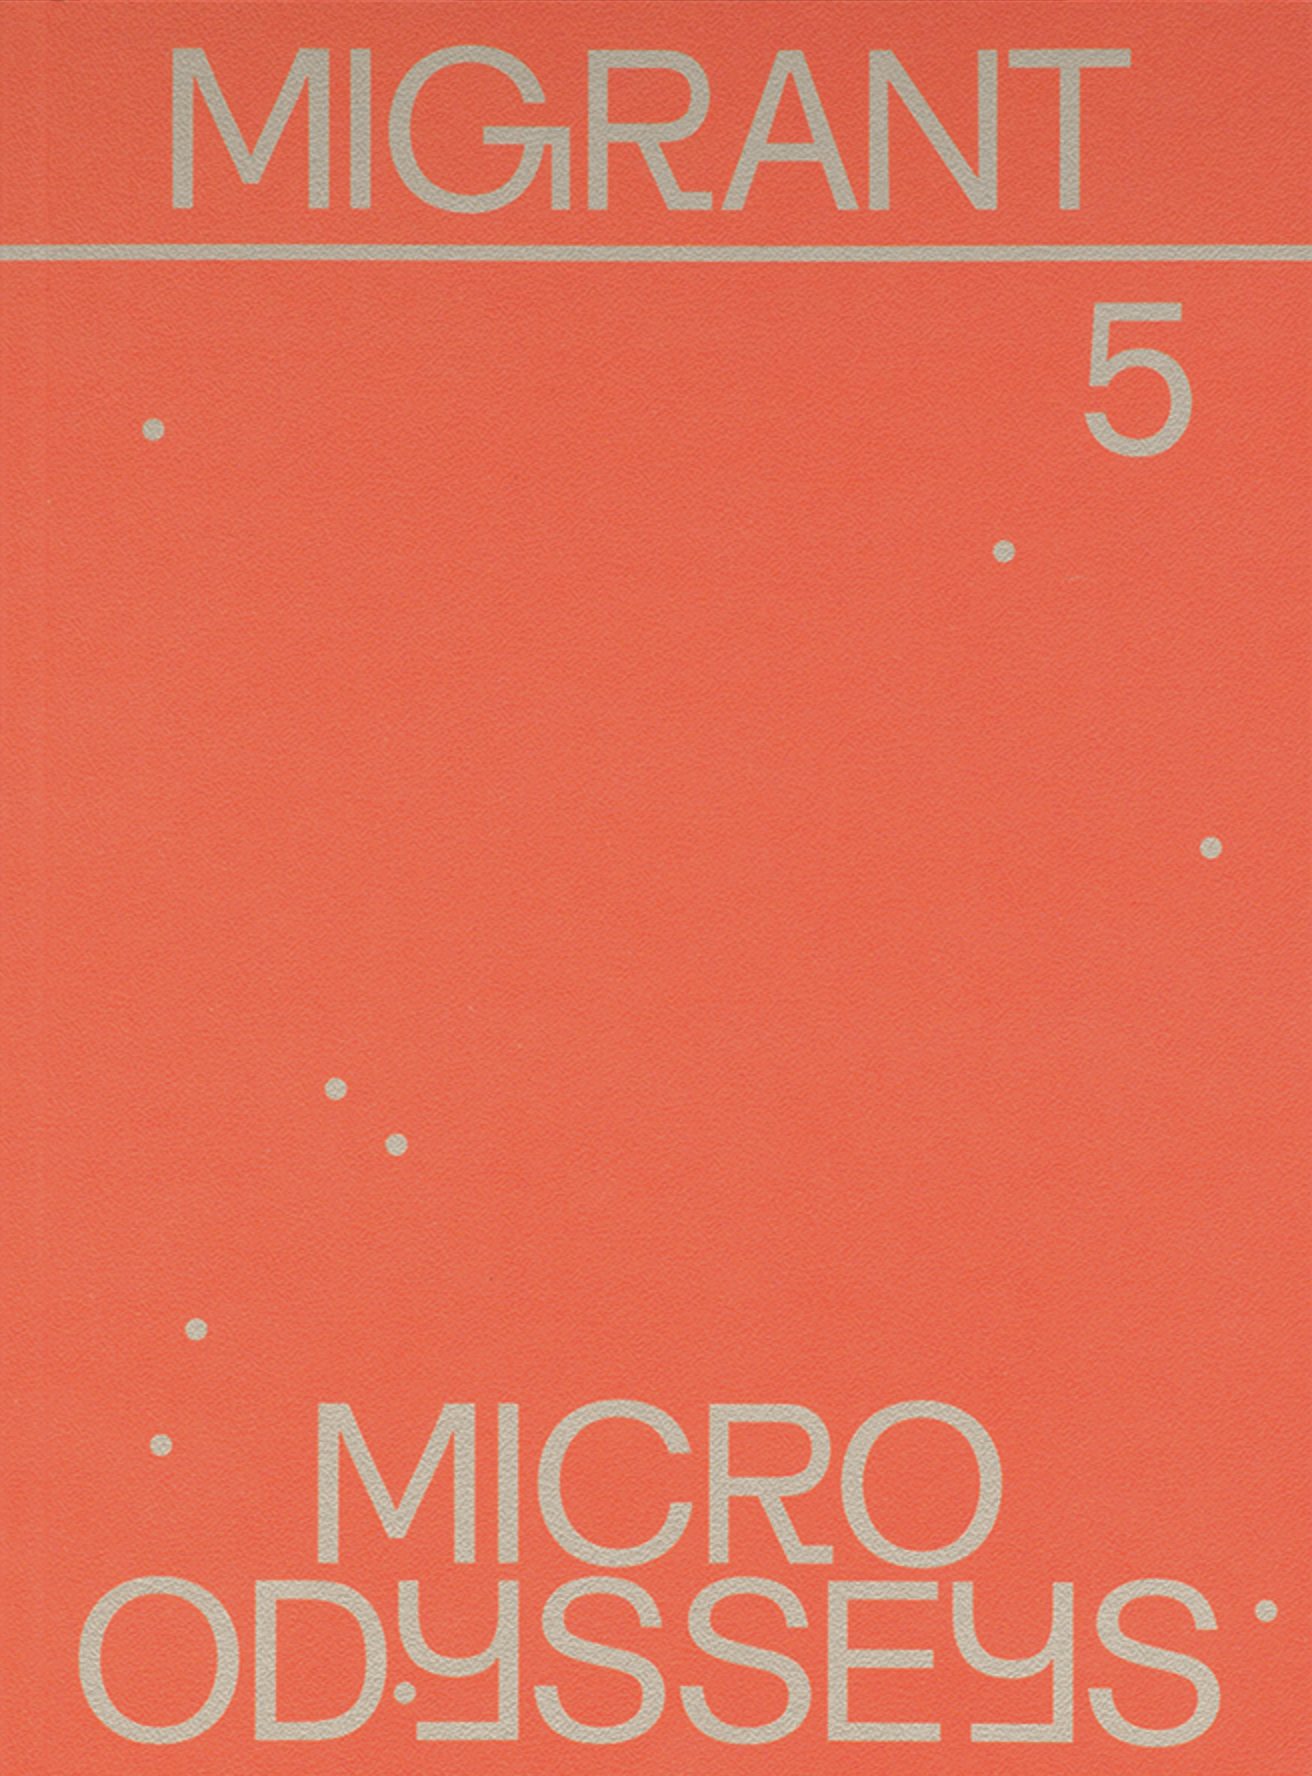 Migrant Journal 5: Micro Odysseys